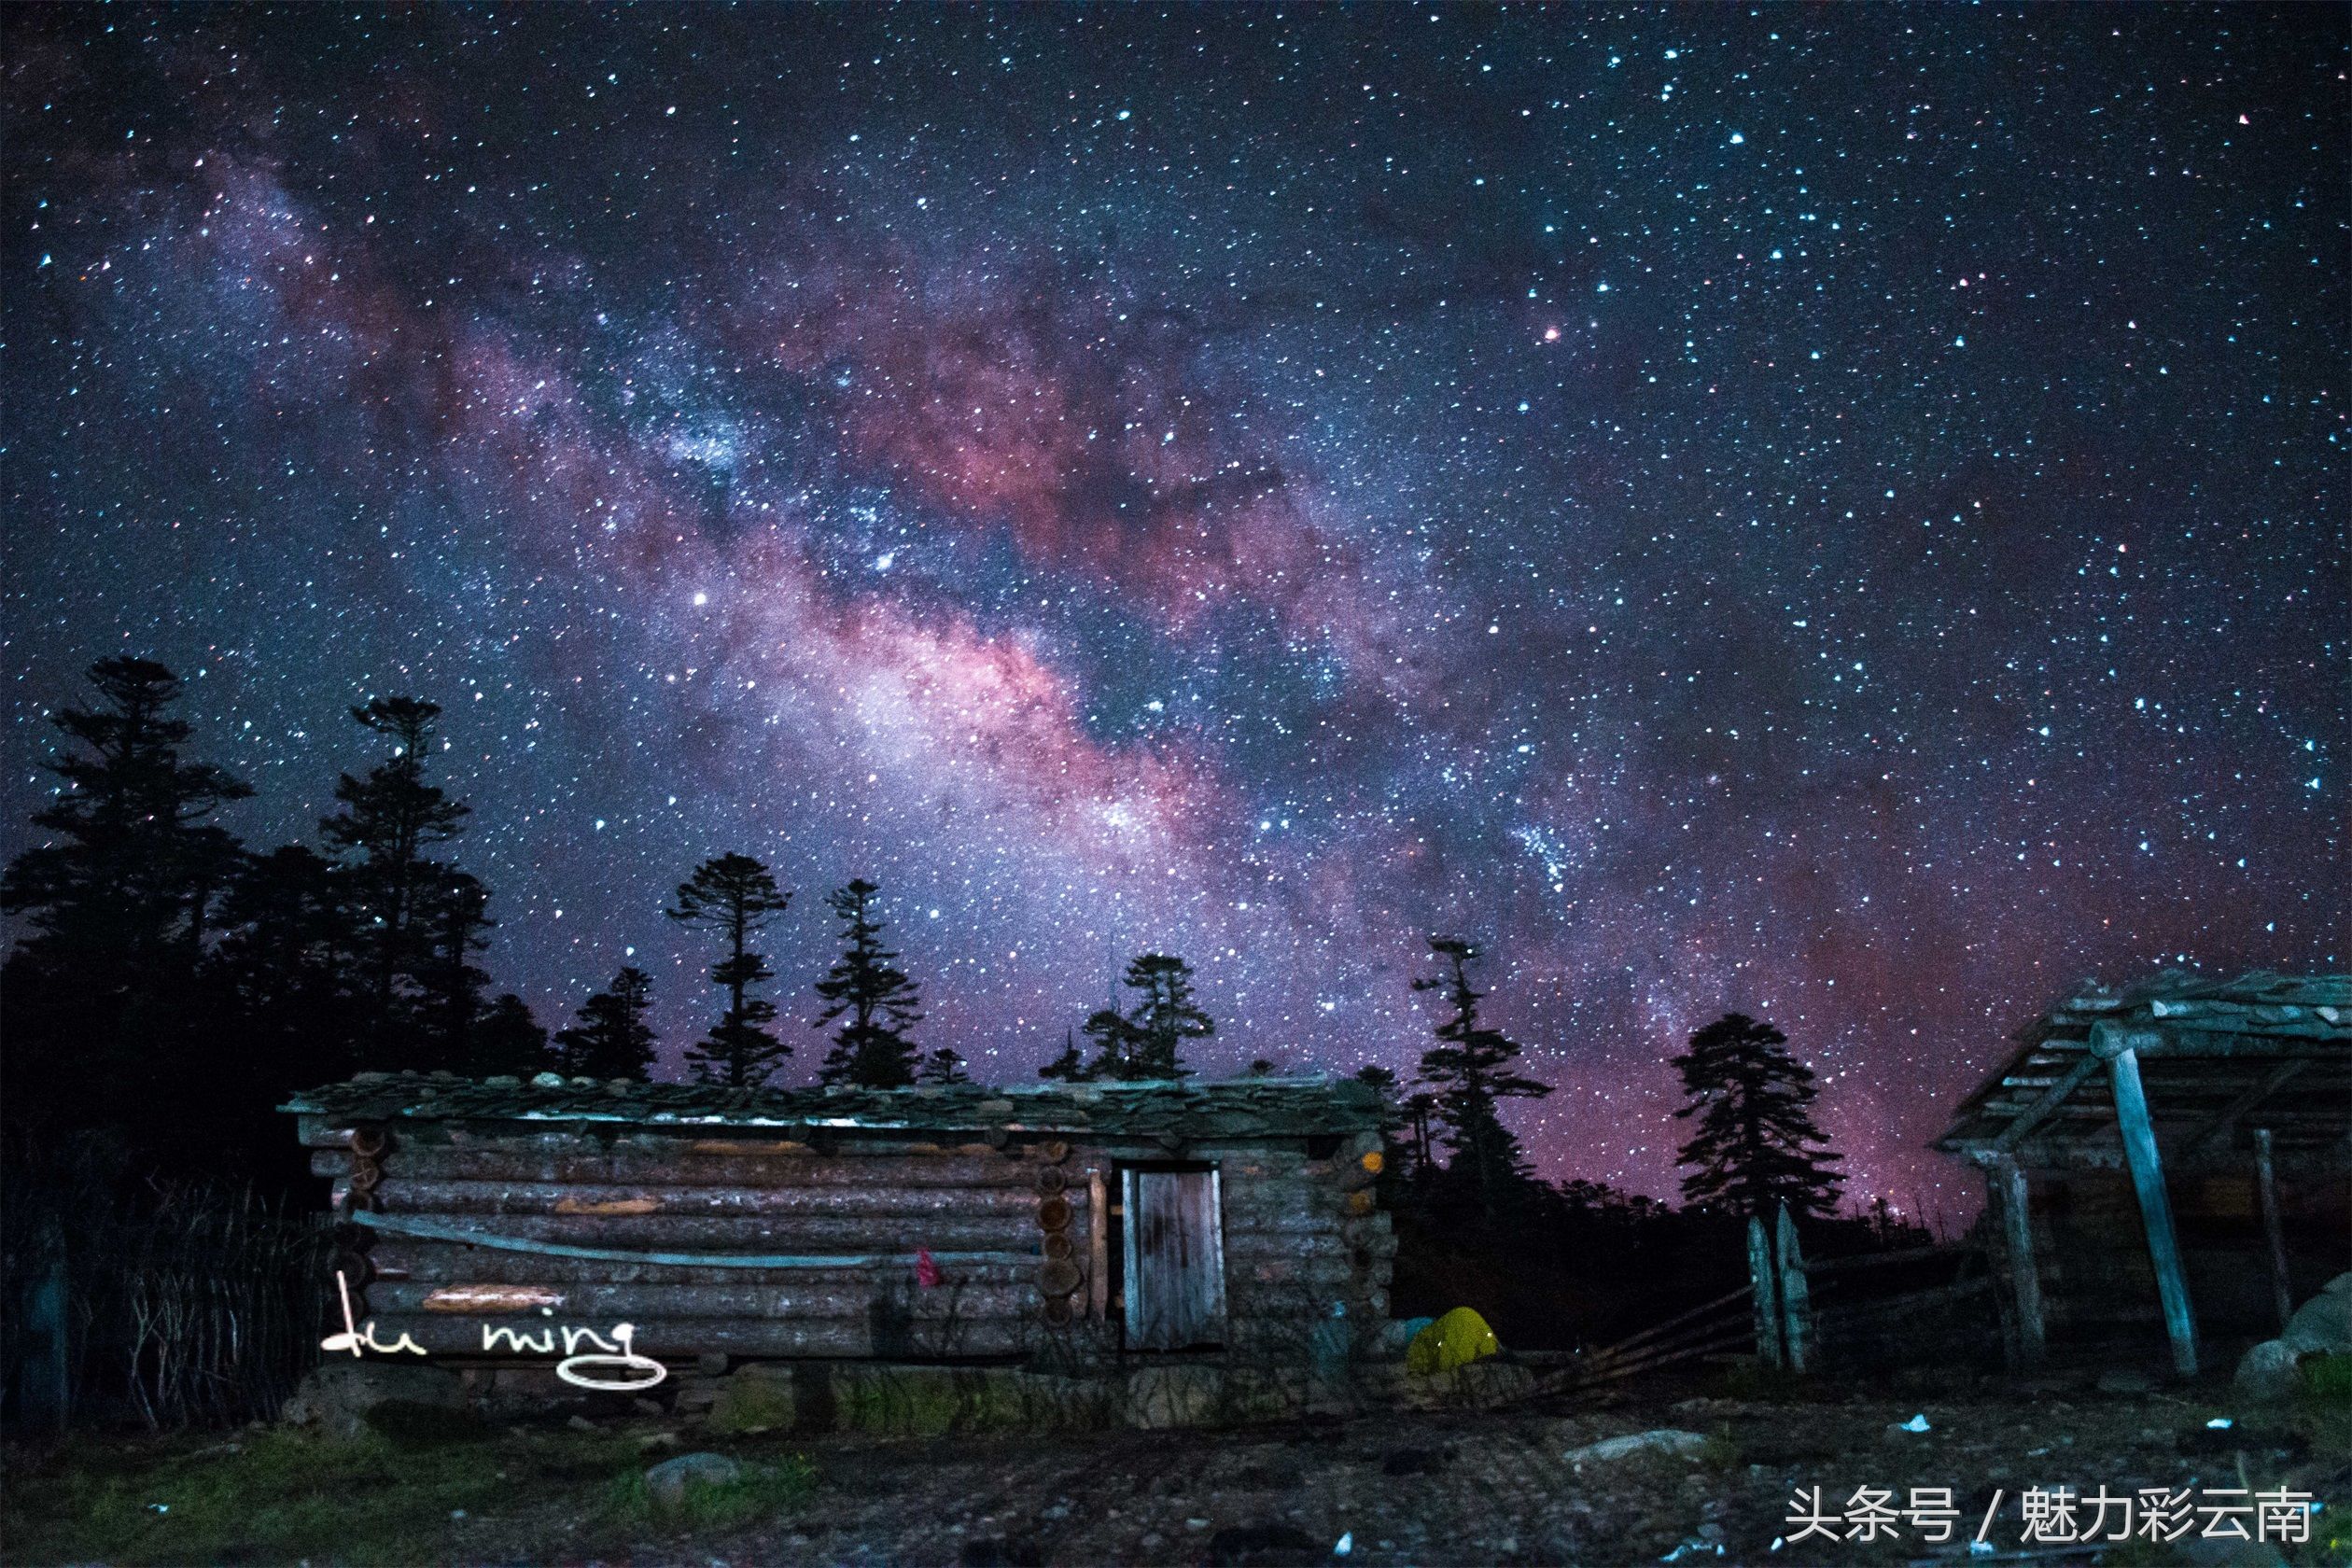 魔幻森林，香格里拉千湖山的星空，这里的夜晚似乎可以摘星辰